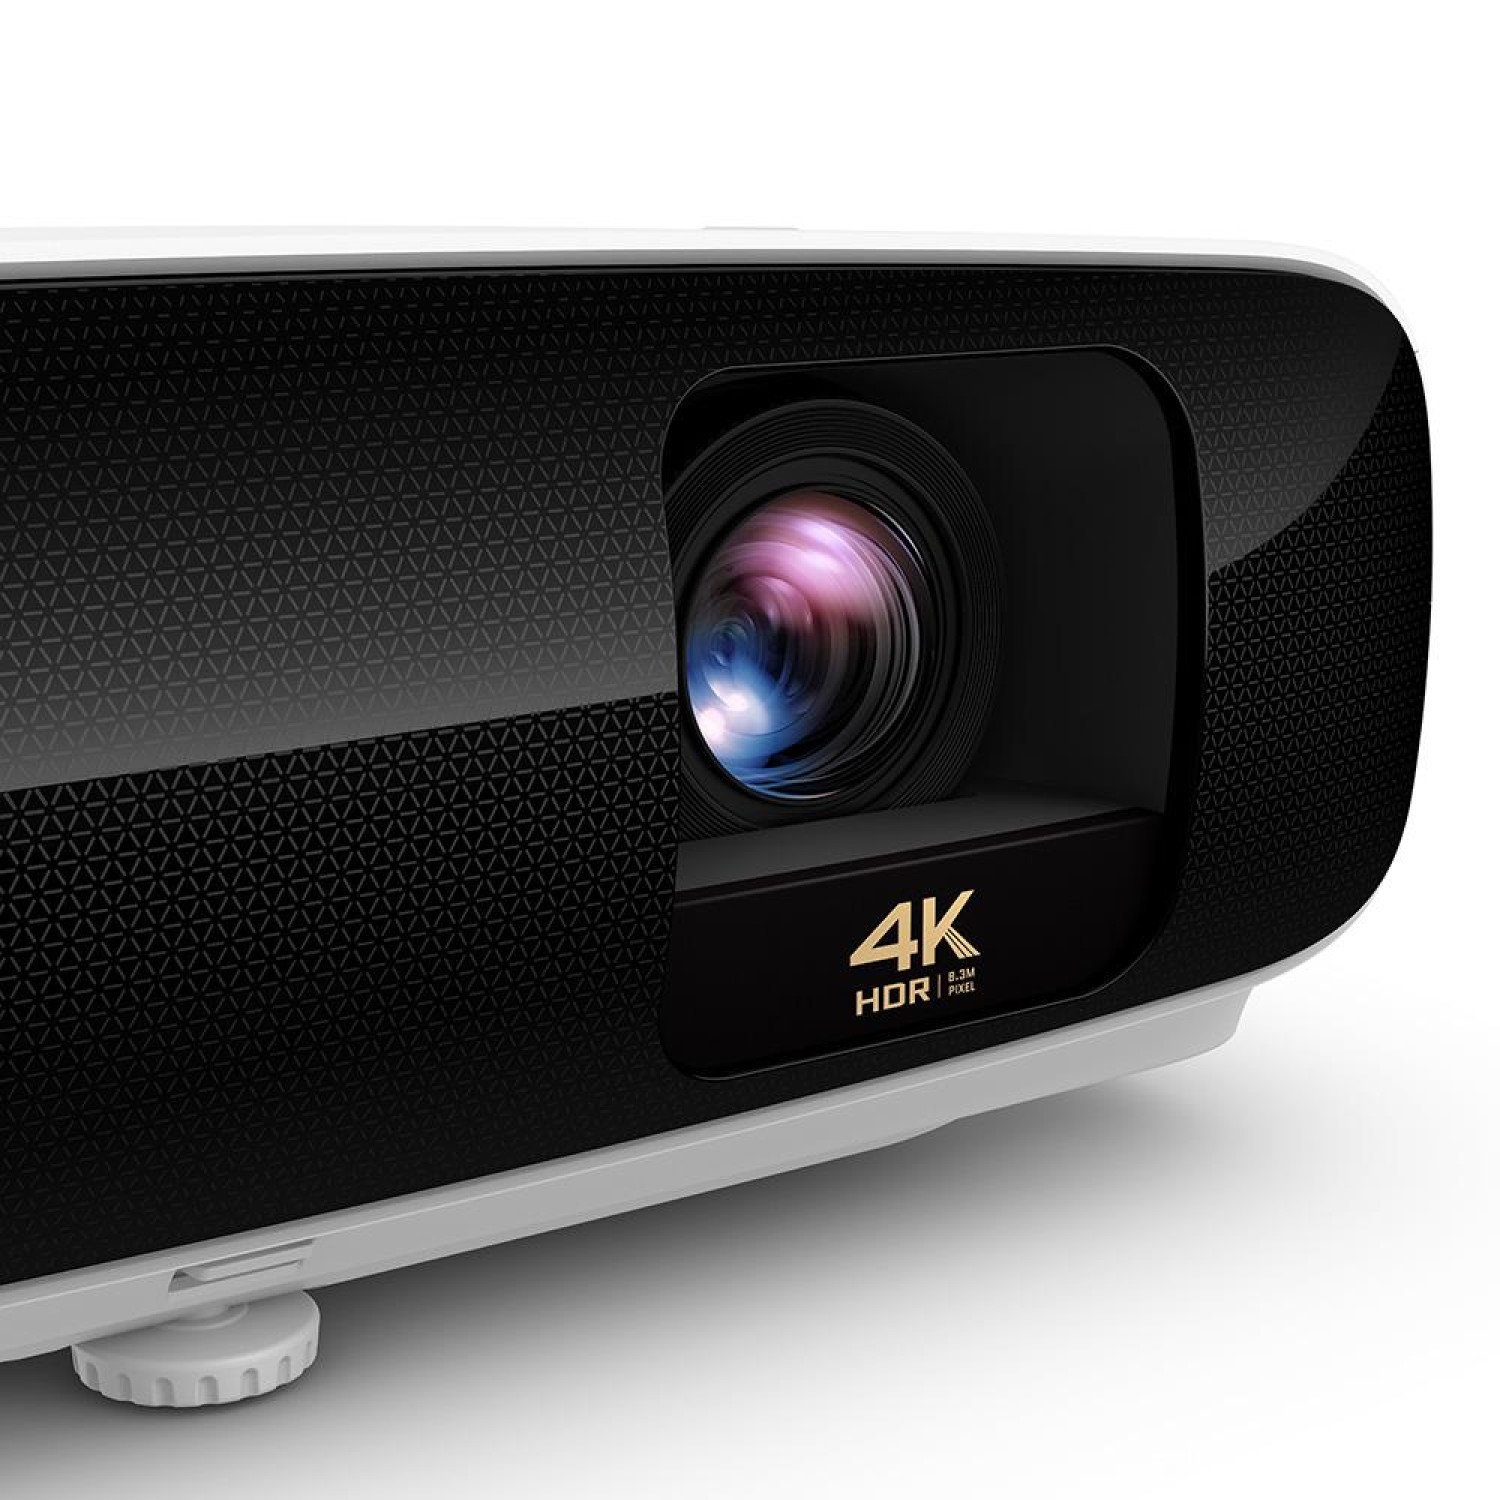 Видеопроектор BenQ TK810, DLP, 4K, Rec.709 (92%), HDR10, Smart, Bluetooth 4.0, WiFi, Бял